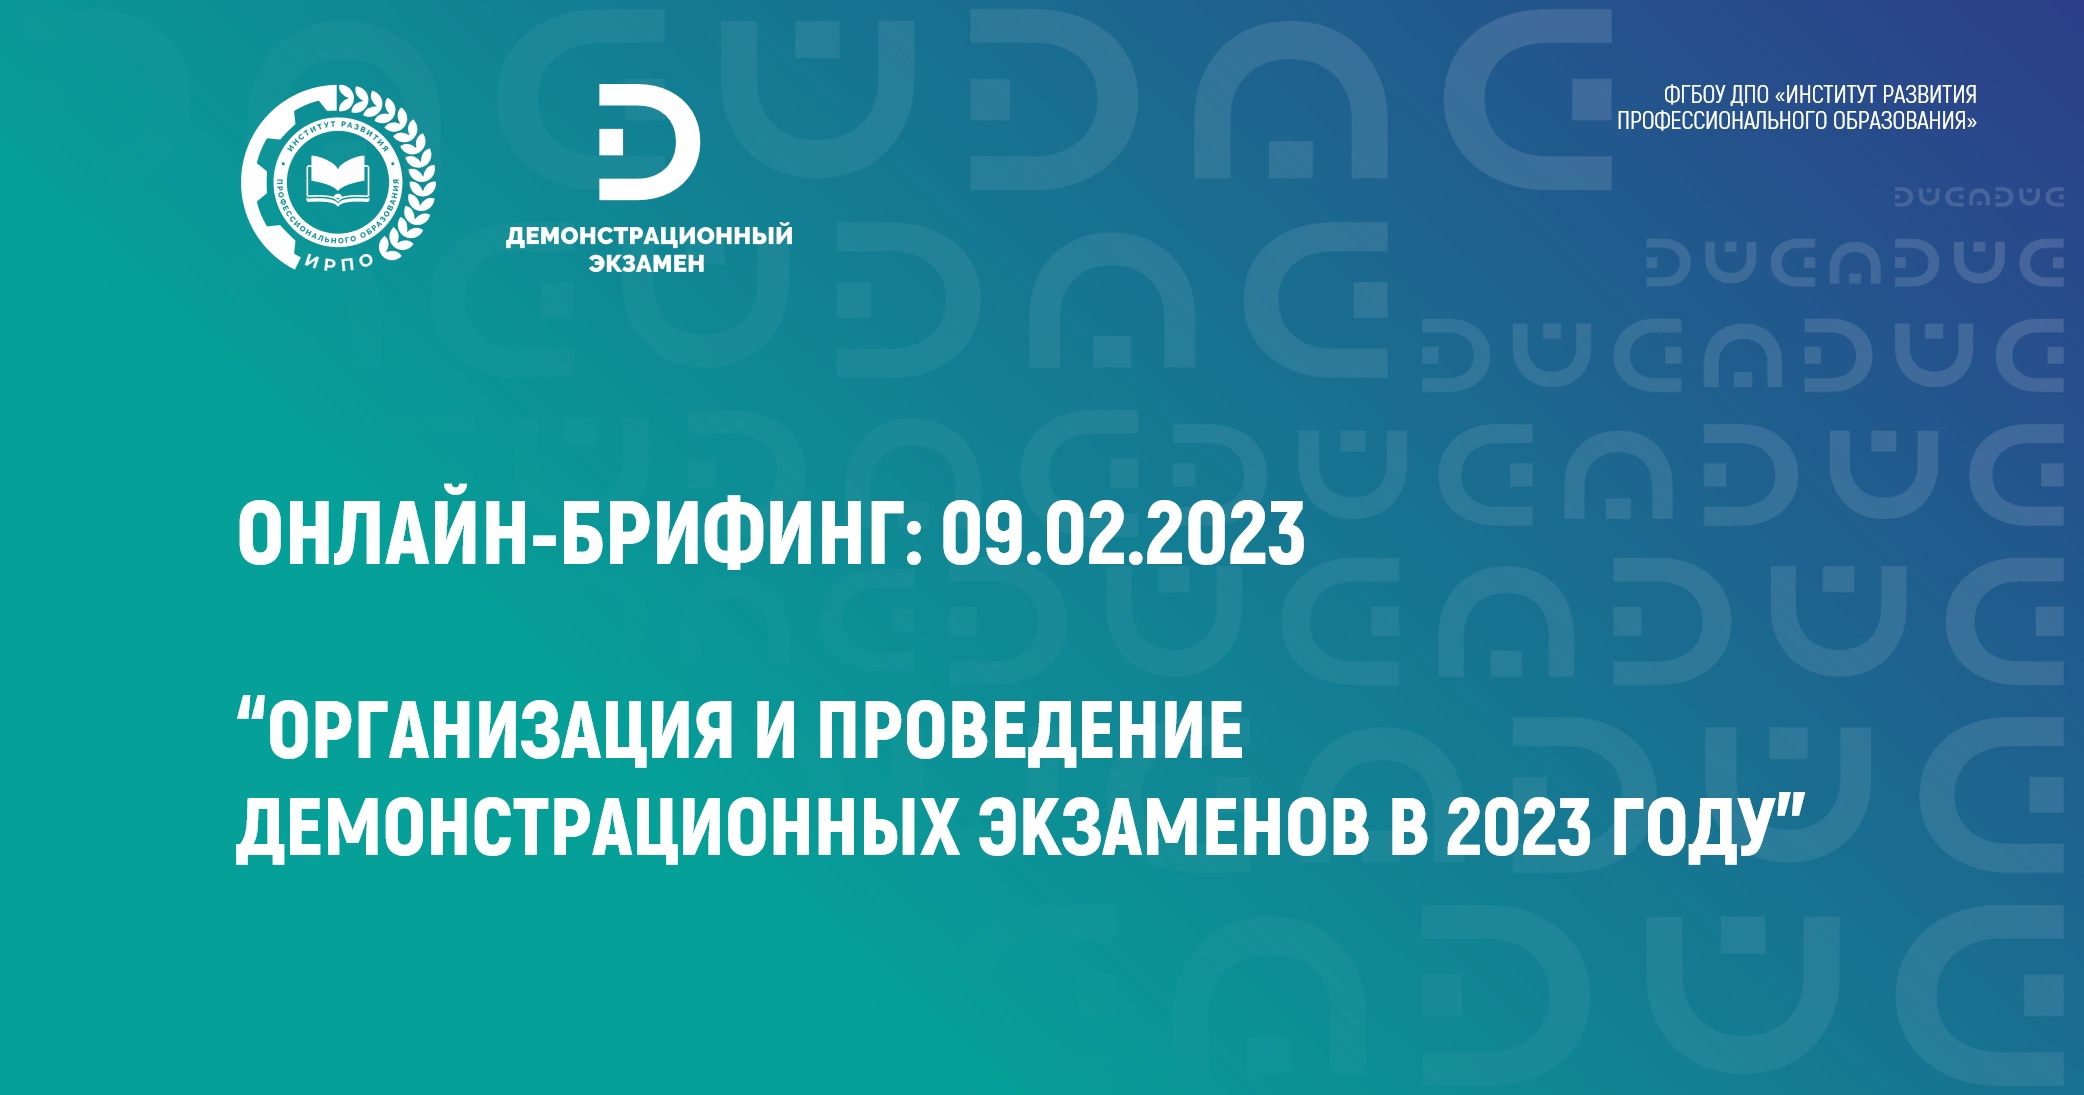 Материалы онлайн-брифинга: 09.02.2023 Онлайн-брифинг «Организация и проведение демонстрационных экзаменов в 2023 году.»